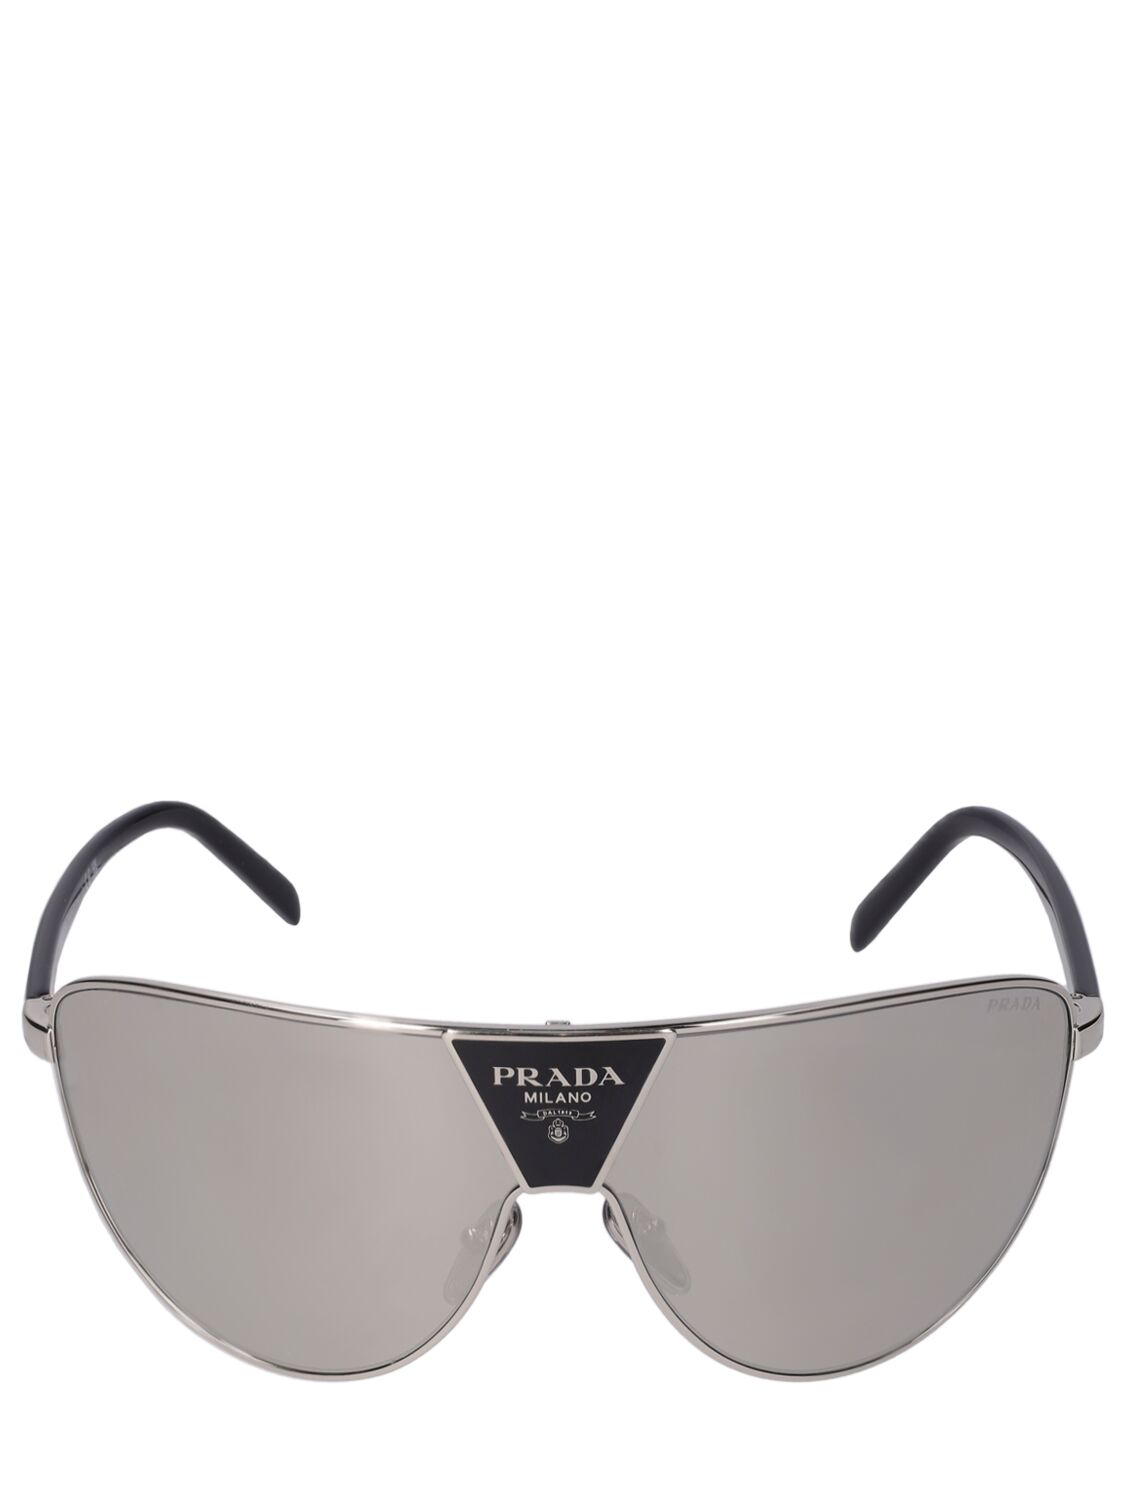 Prada Catwalk Pilot Metal Sunglasses In Black,grey